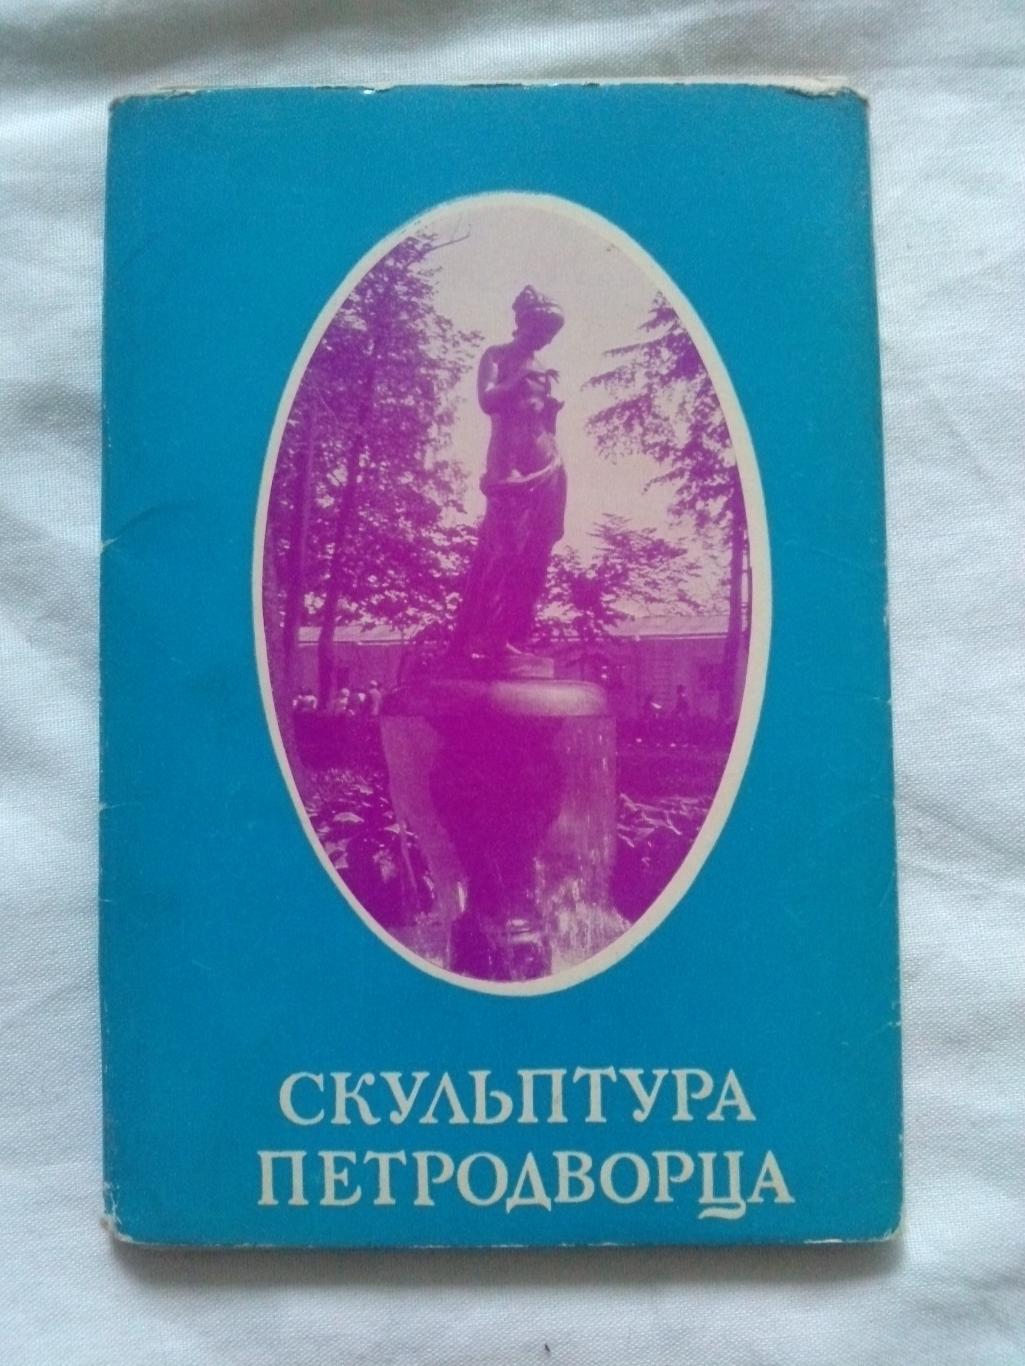 Скульптура Петродворца (Ленинград) 1971 г. полный набор - 18 открыток (идеал)